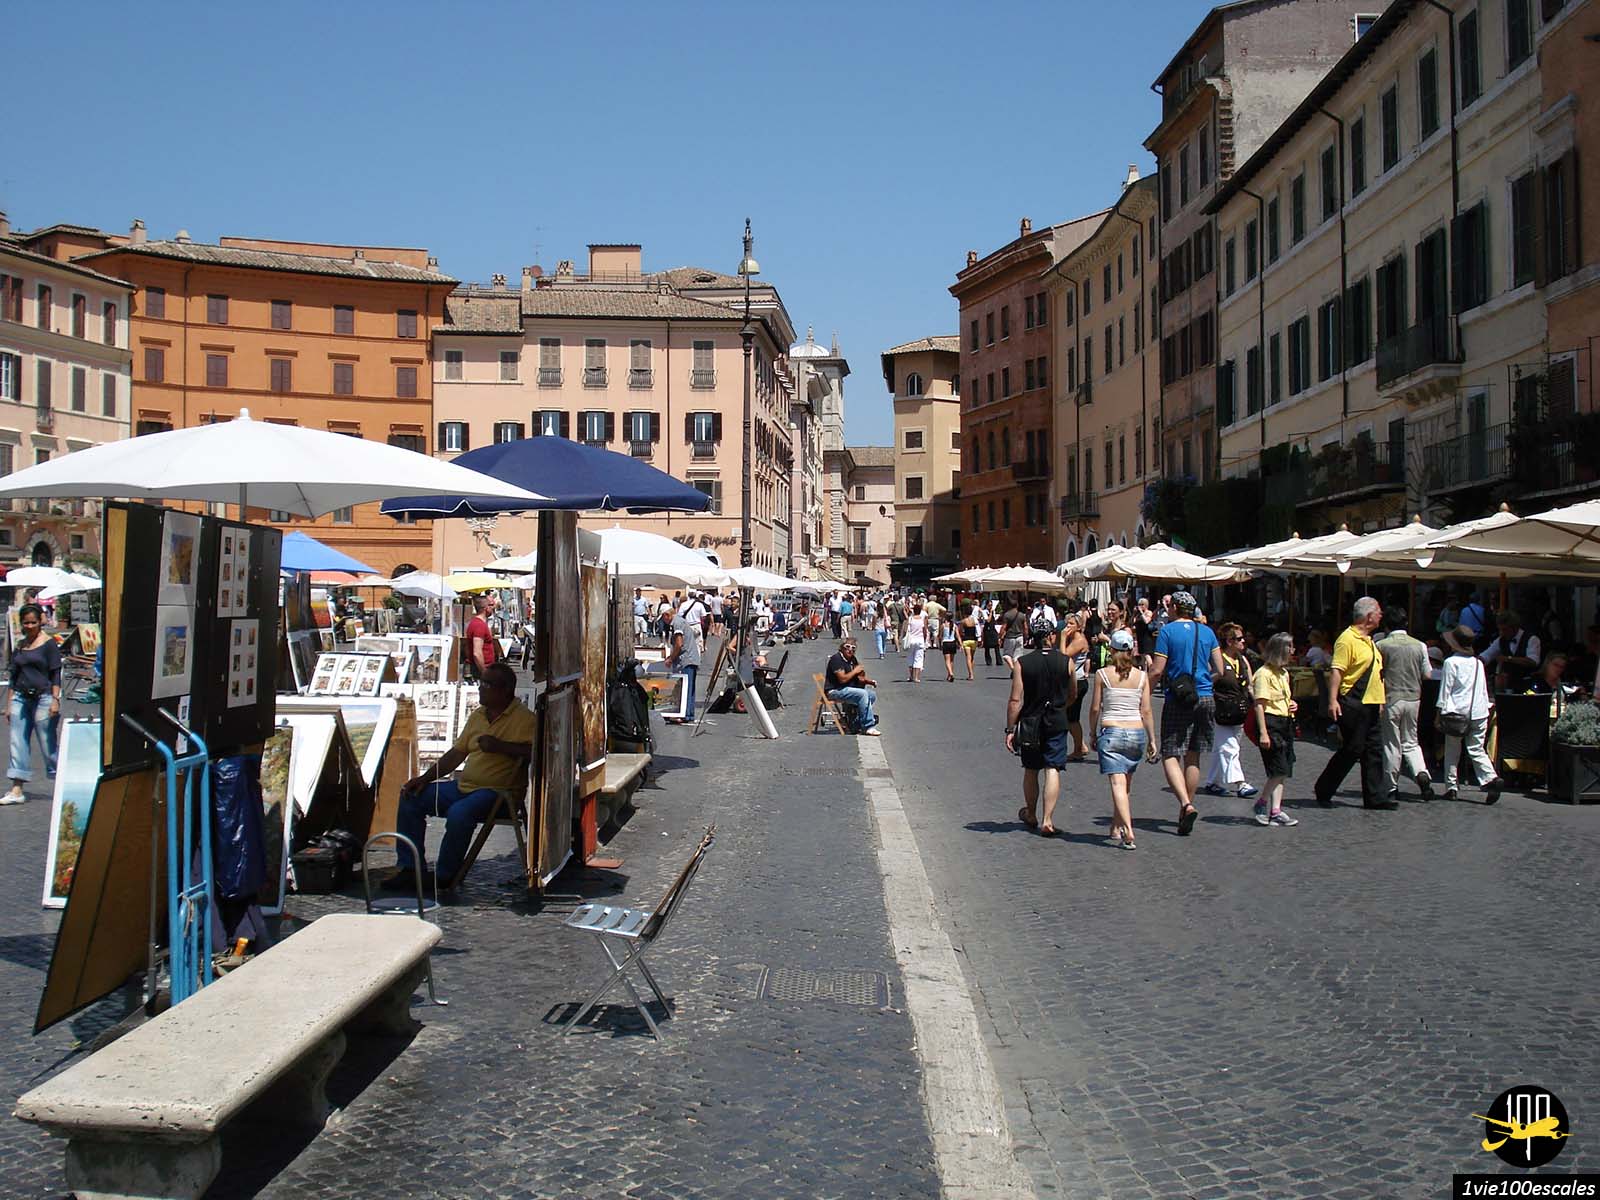 La place animée Piazza Navona de Rome avec ses touristes et ses vendeurs de tableaux